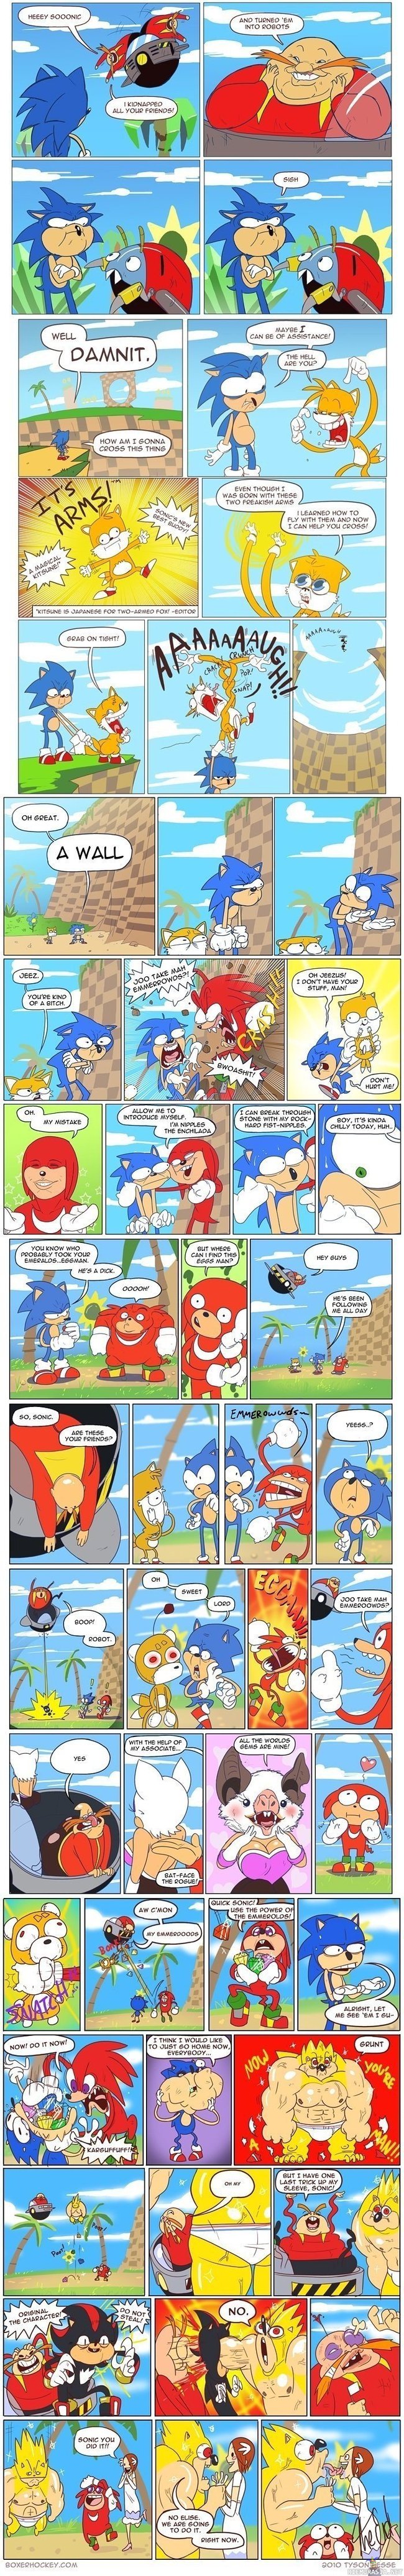 Sonic - Todella häiriintynyt sarjakuva sairaan nopeesta siilistä kavereineen